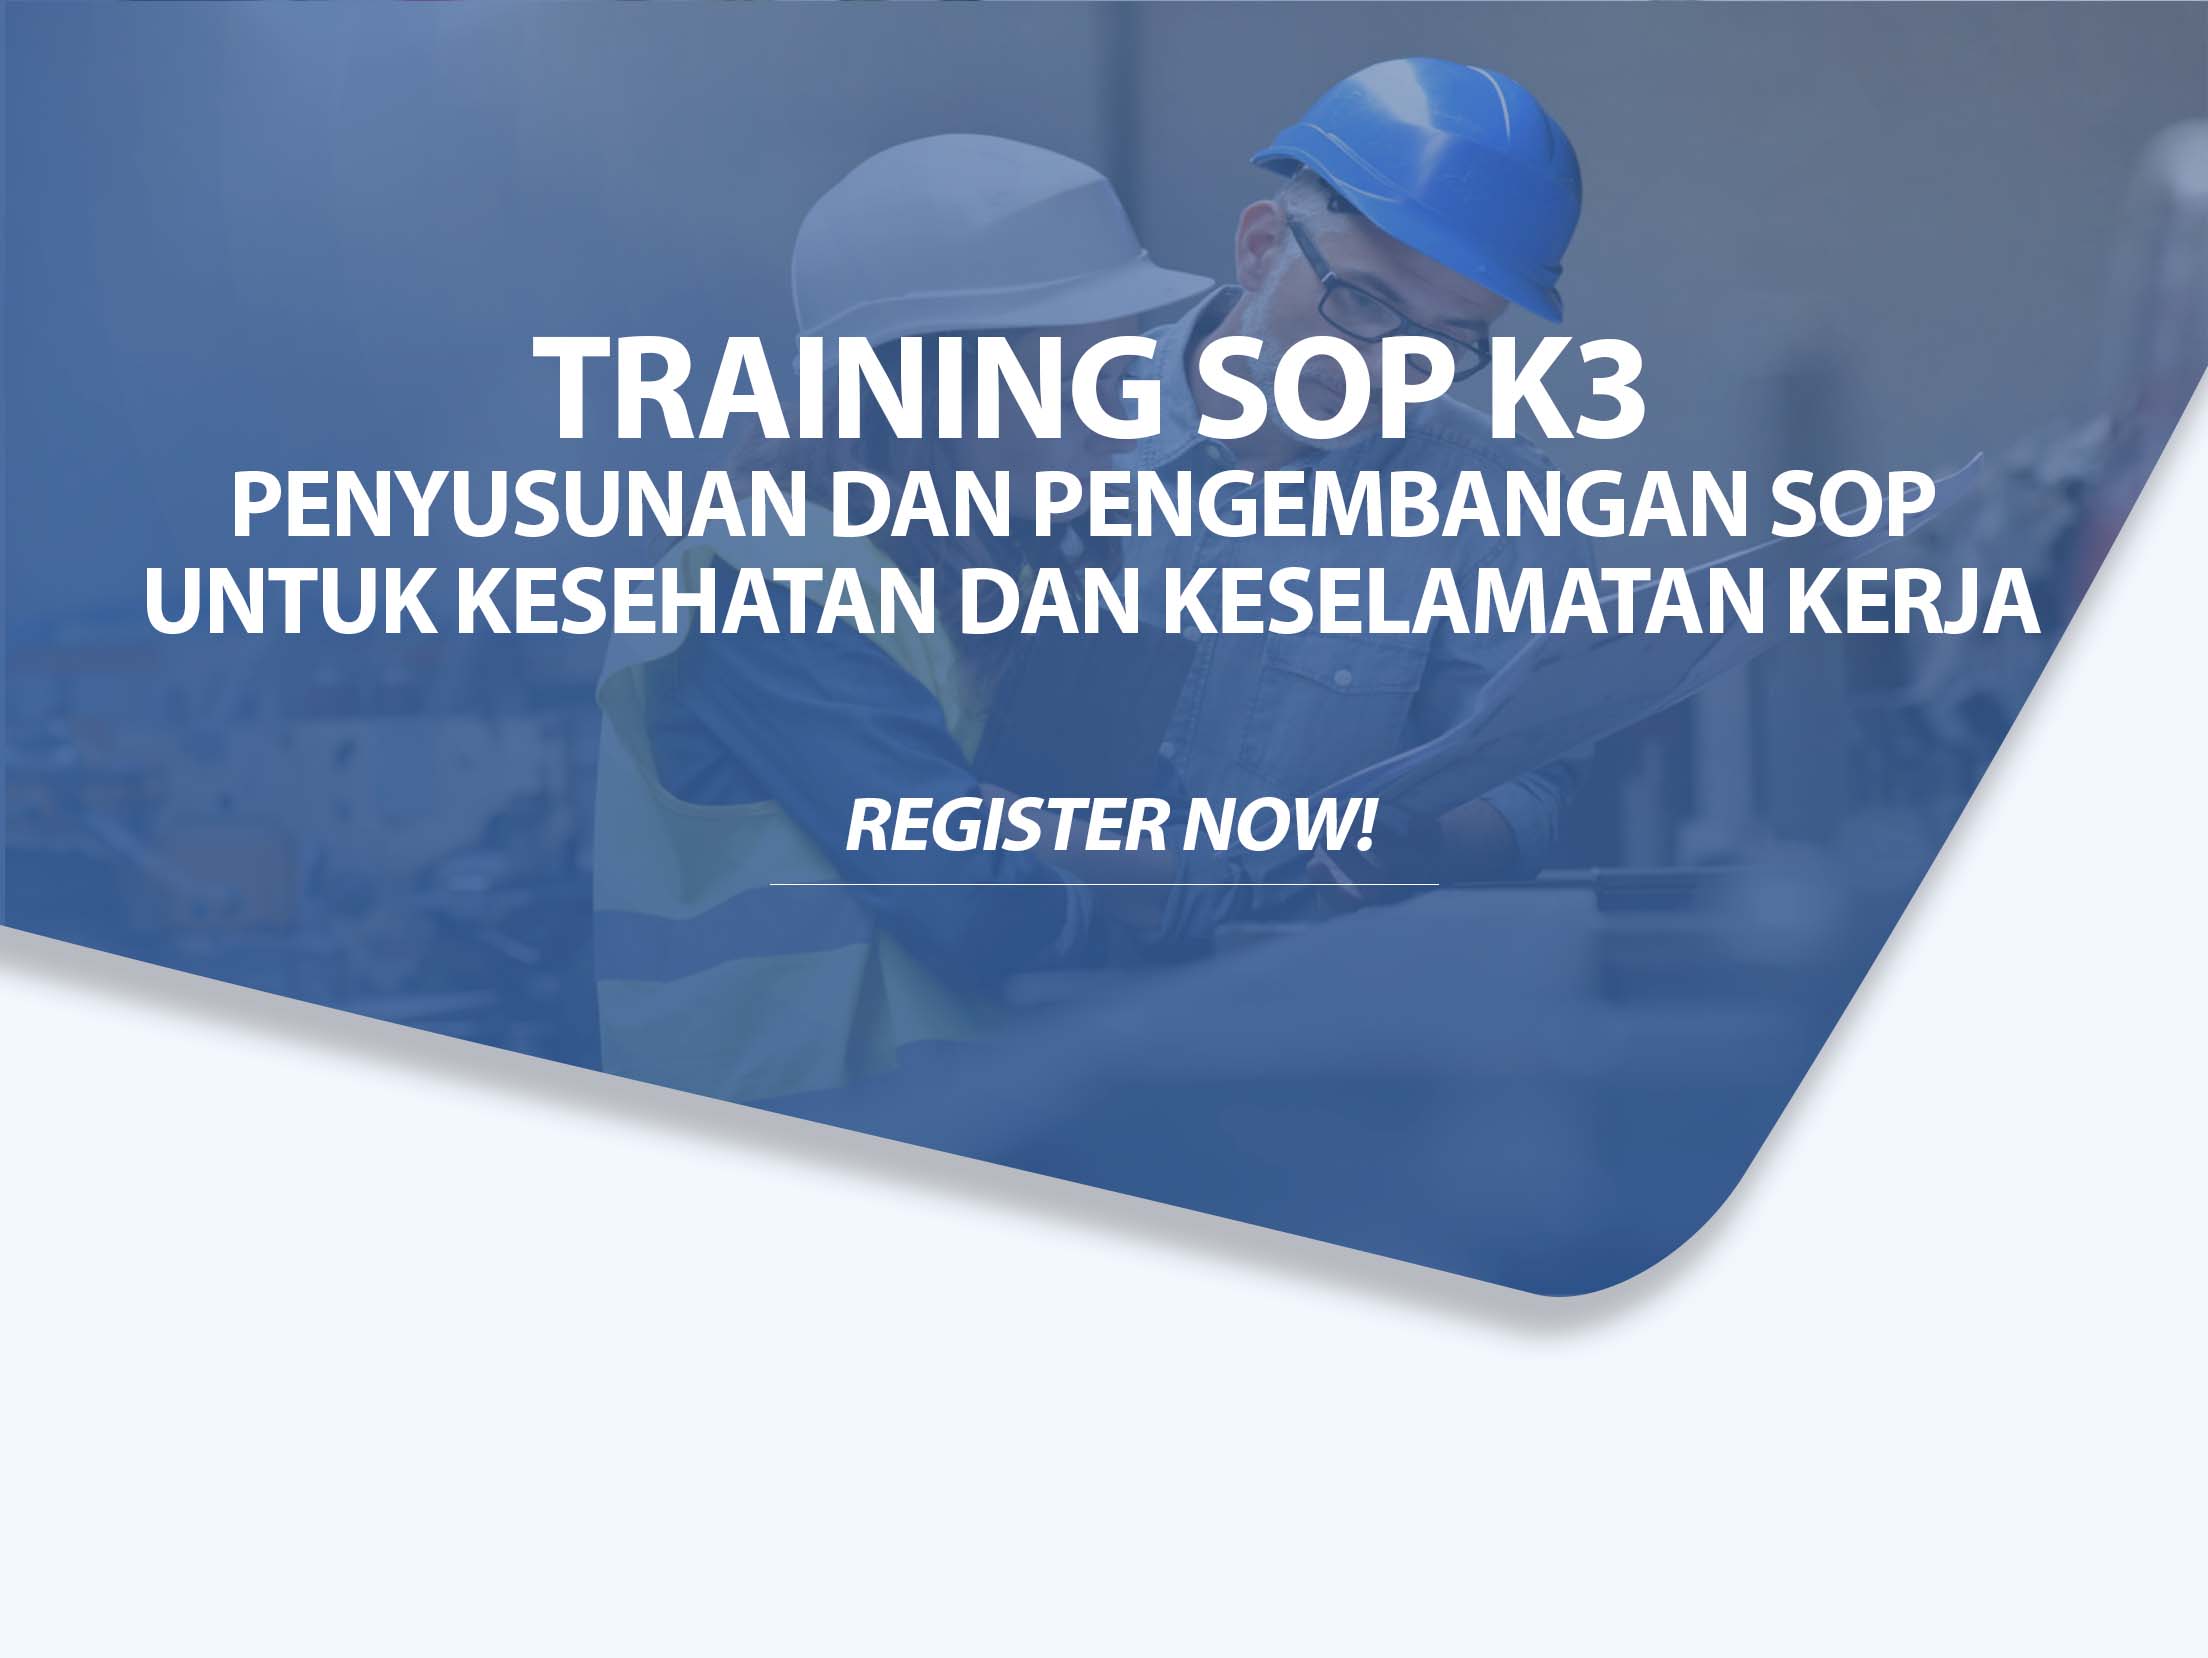 Training SOP K3